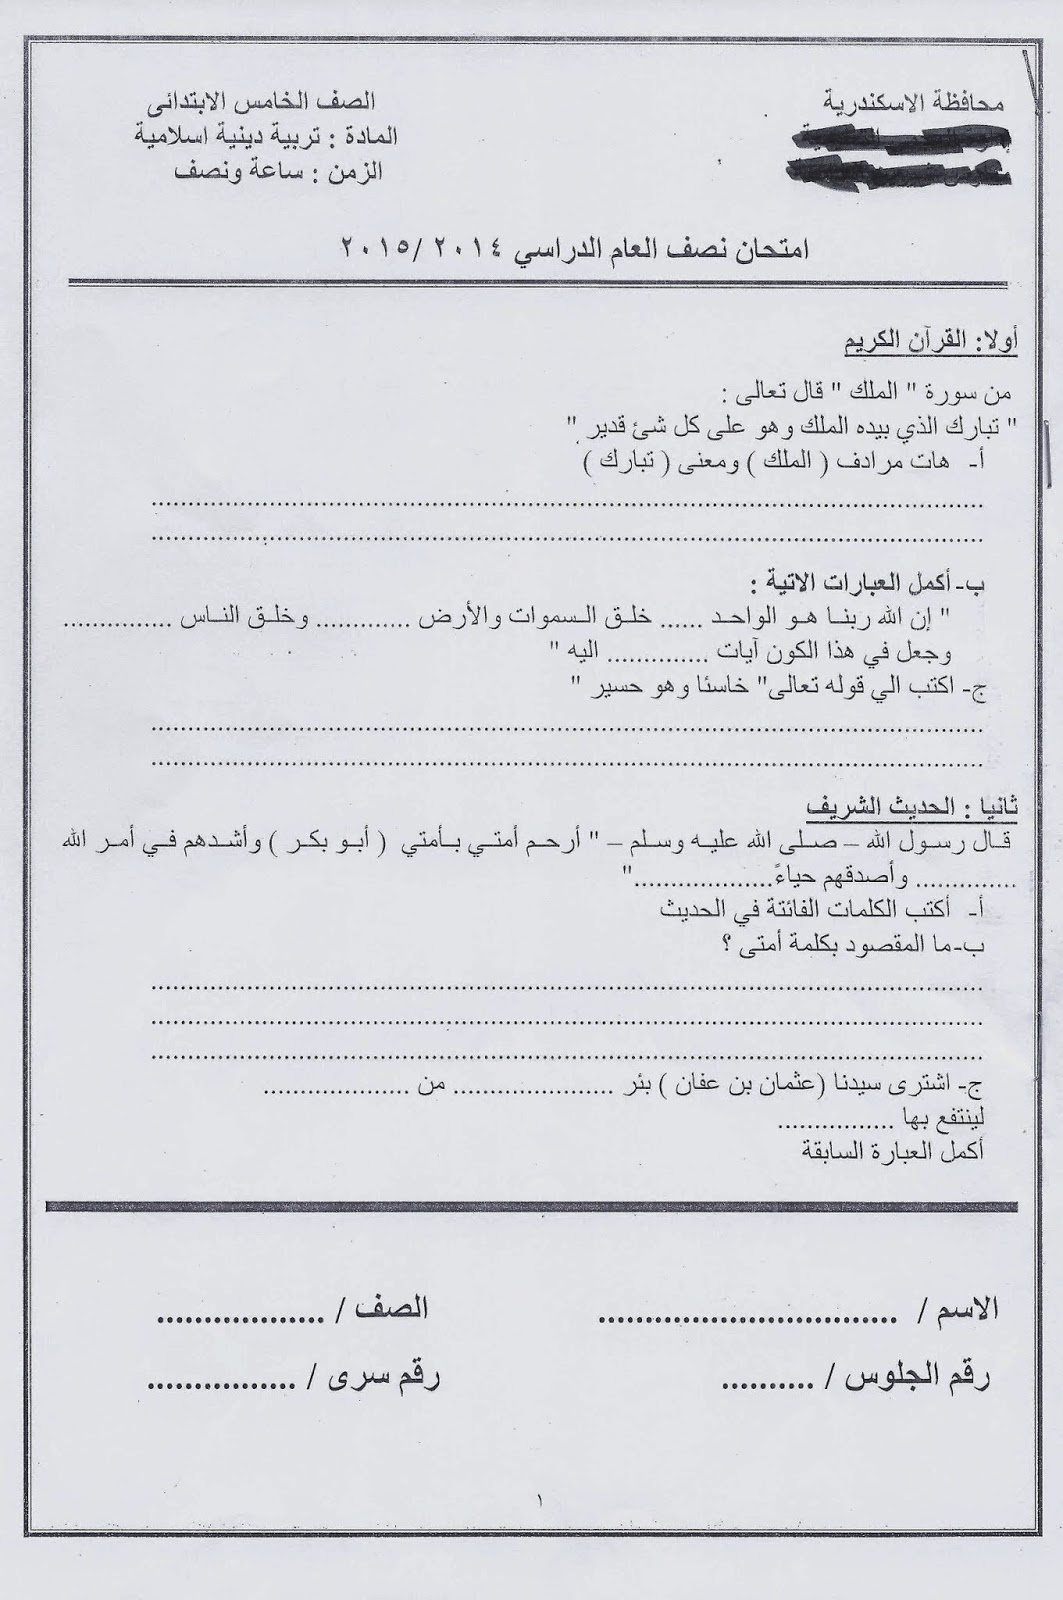 امتحانات الاسكندرية 2015 - امتحان اللغة العربية والدين للصف الخامس الابتدائى نصف العام 2015 Scan0099